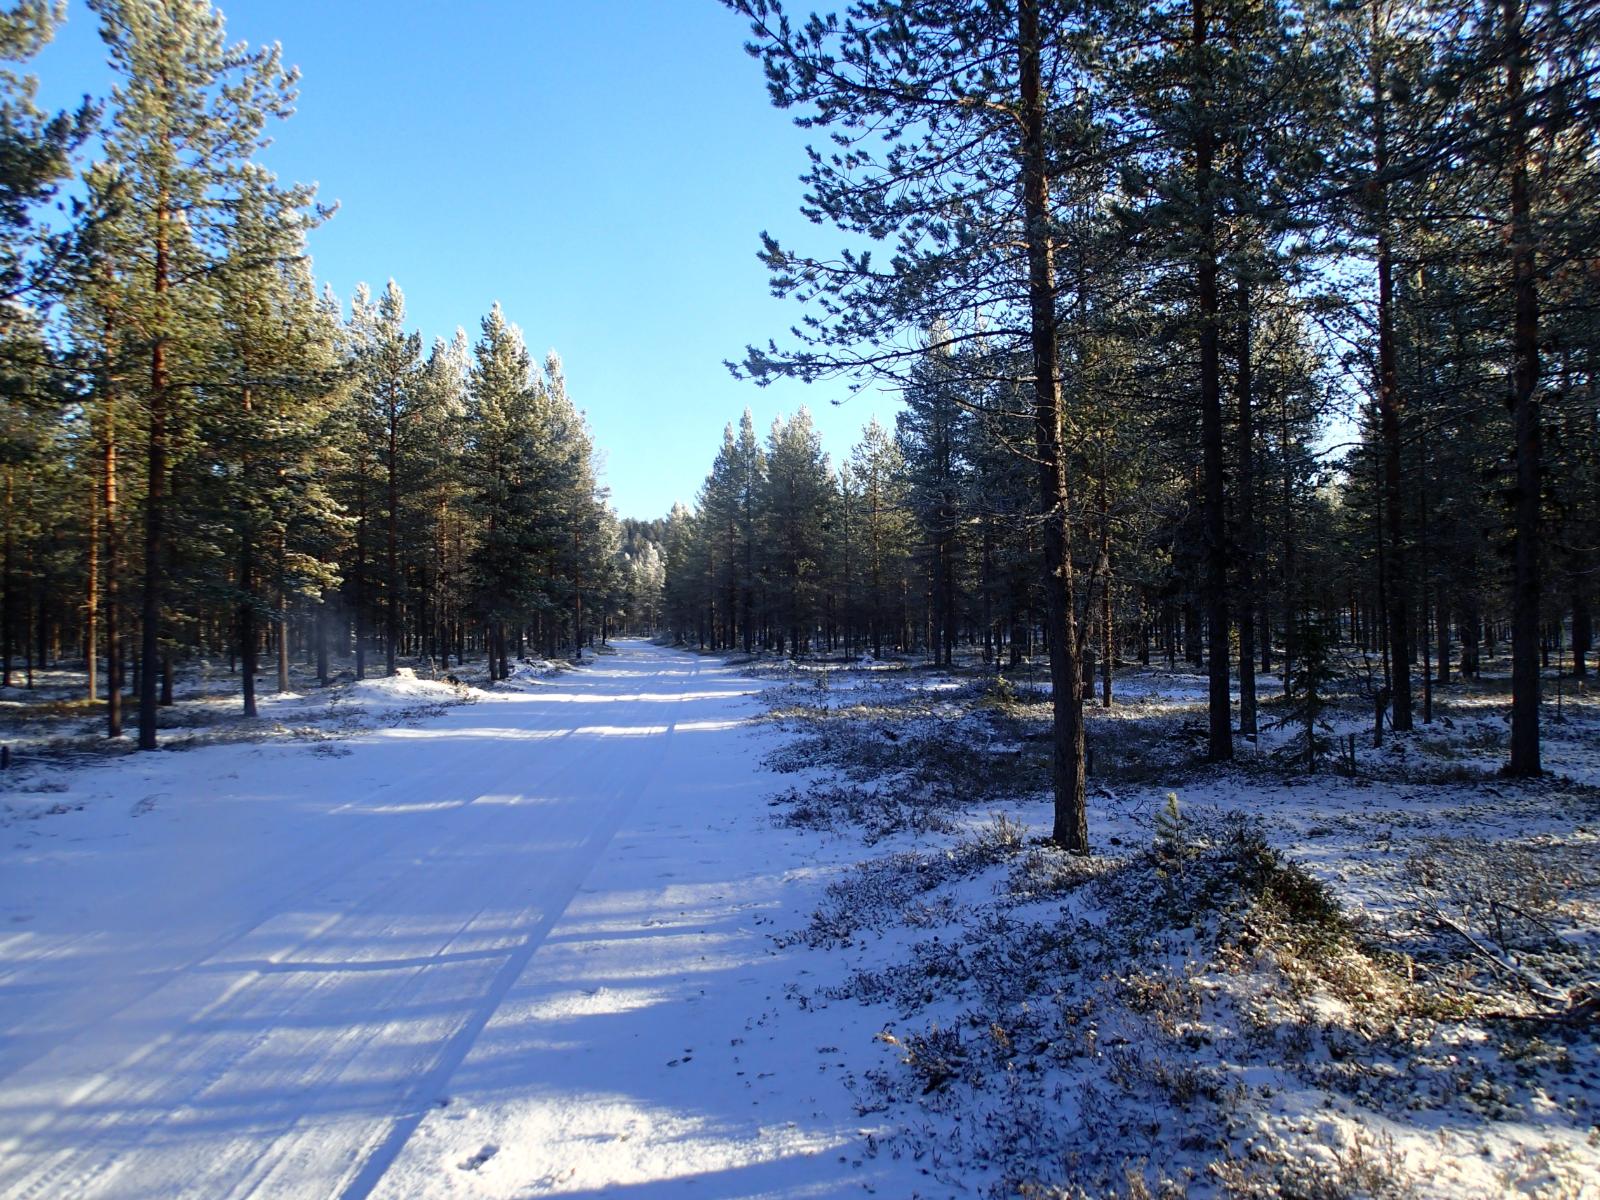 Ajojälkiä painautuneena ohueen lumeen mökkitiellä, joka kulkee metsän läpi.